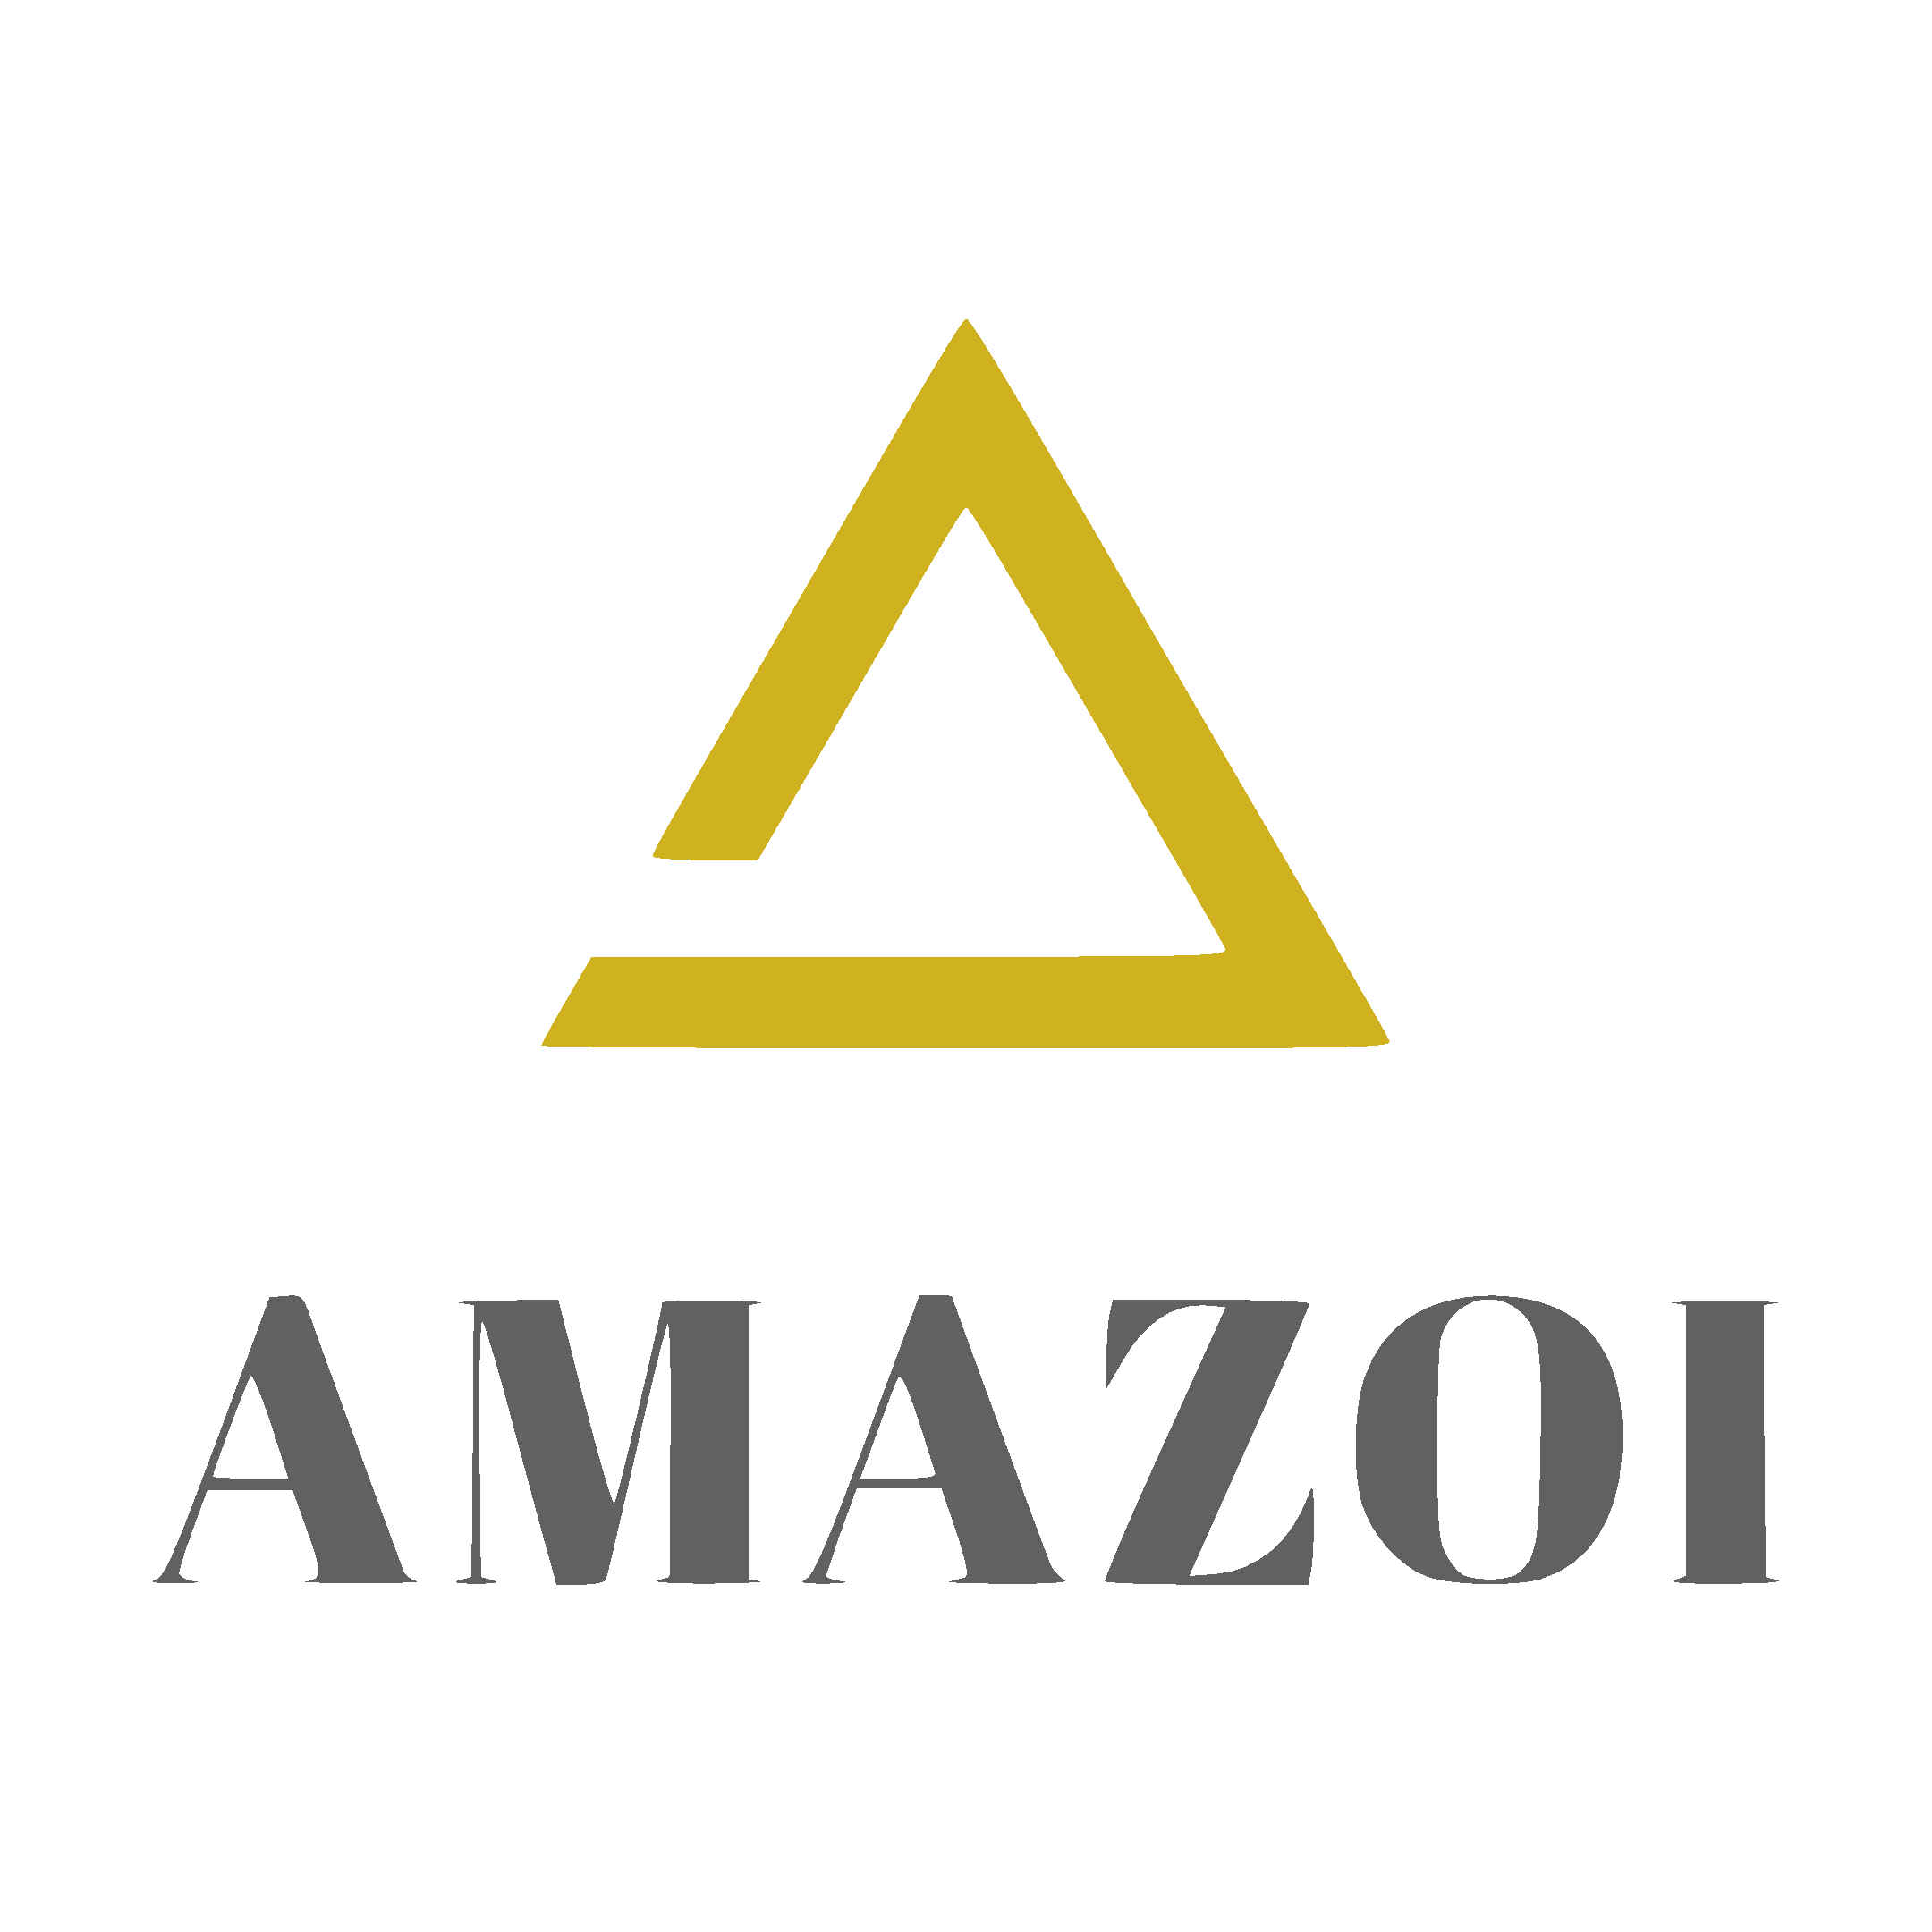 AMAZOI Software